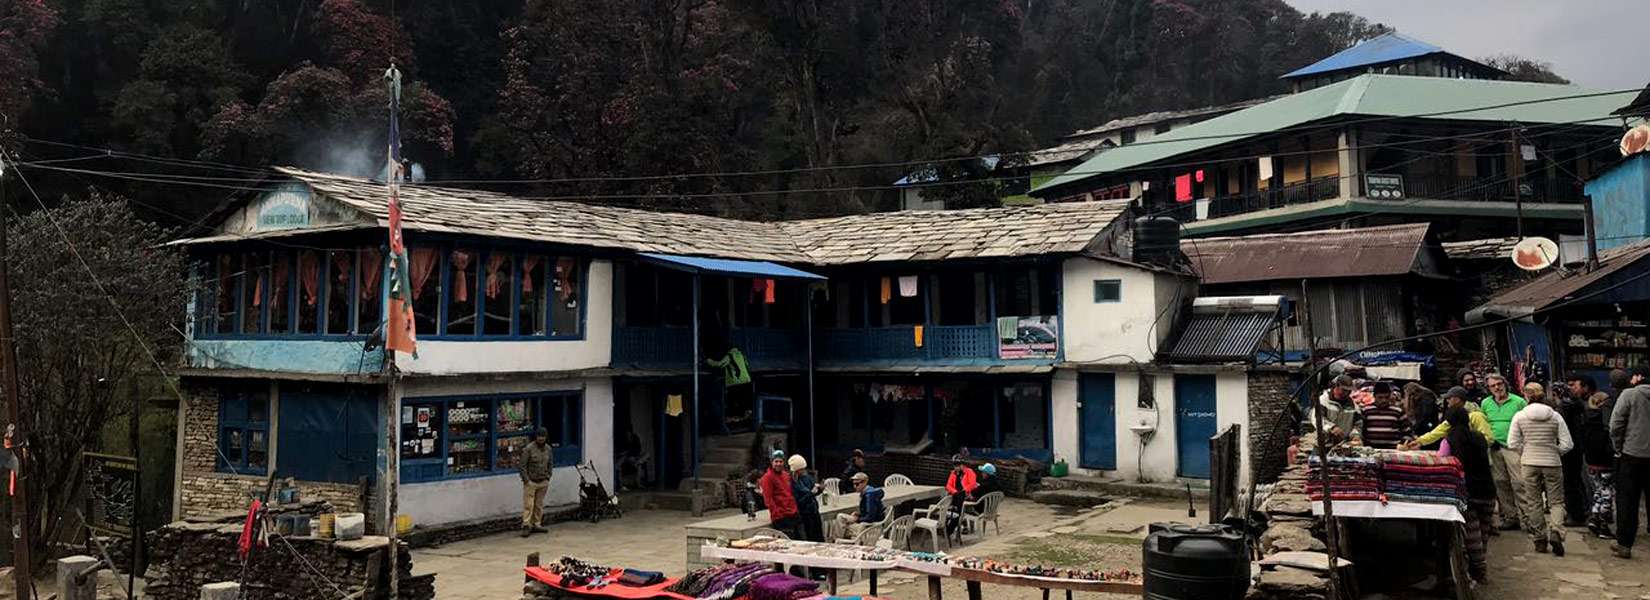 Ghorepani Poon Hill Trek - Annapurna short Trek blog